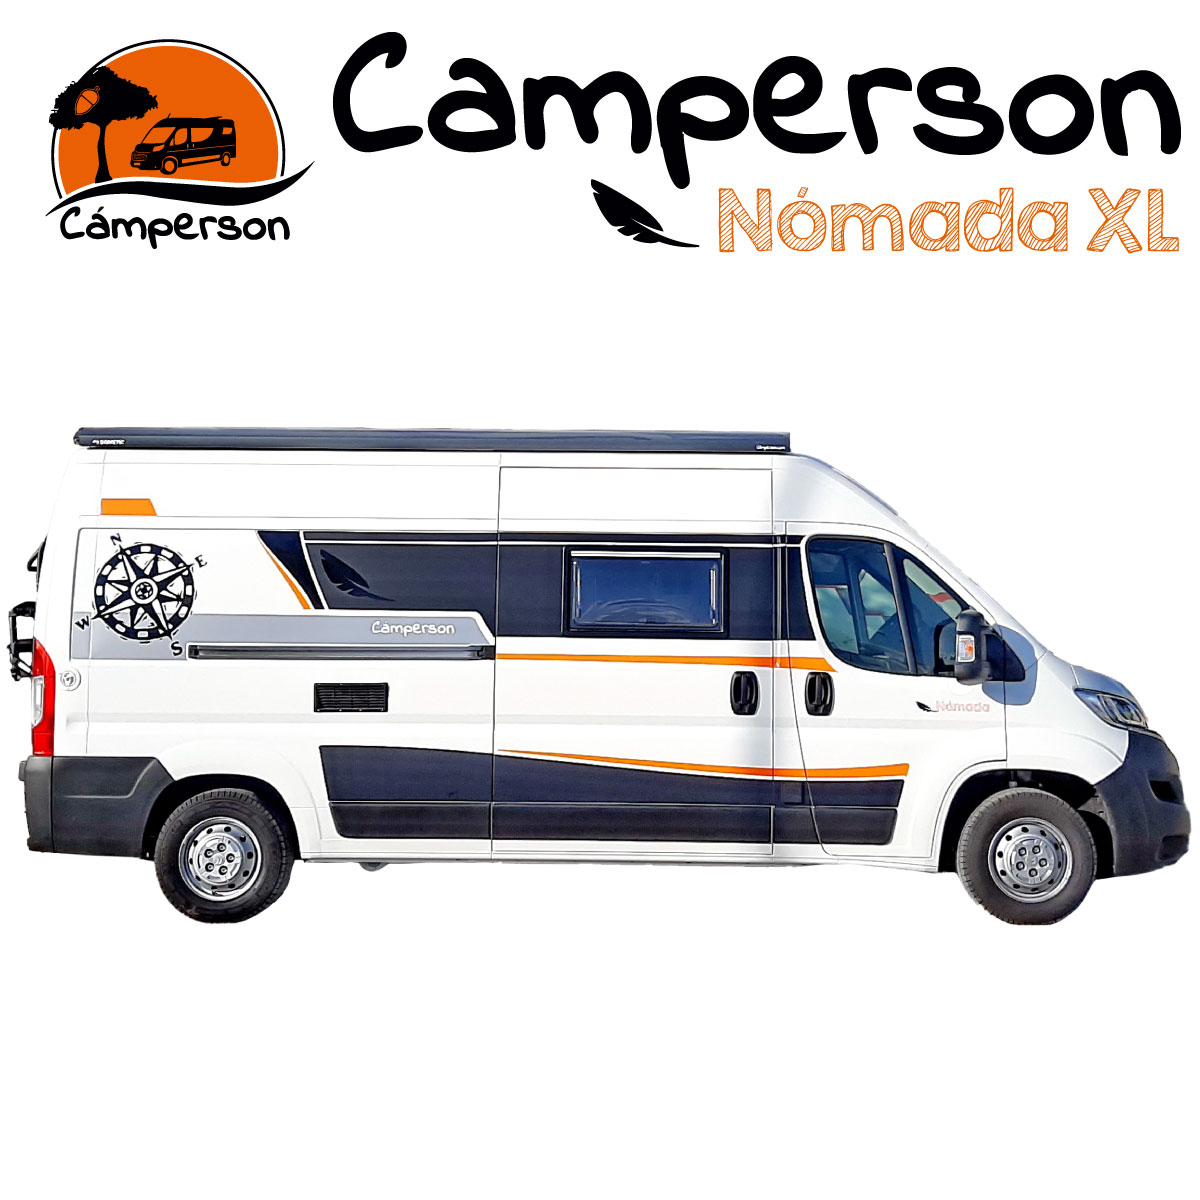 Camperson Nomada XL portada